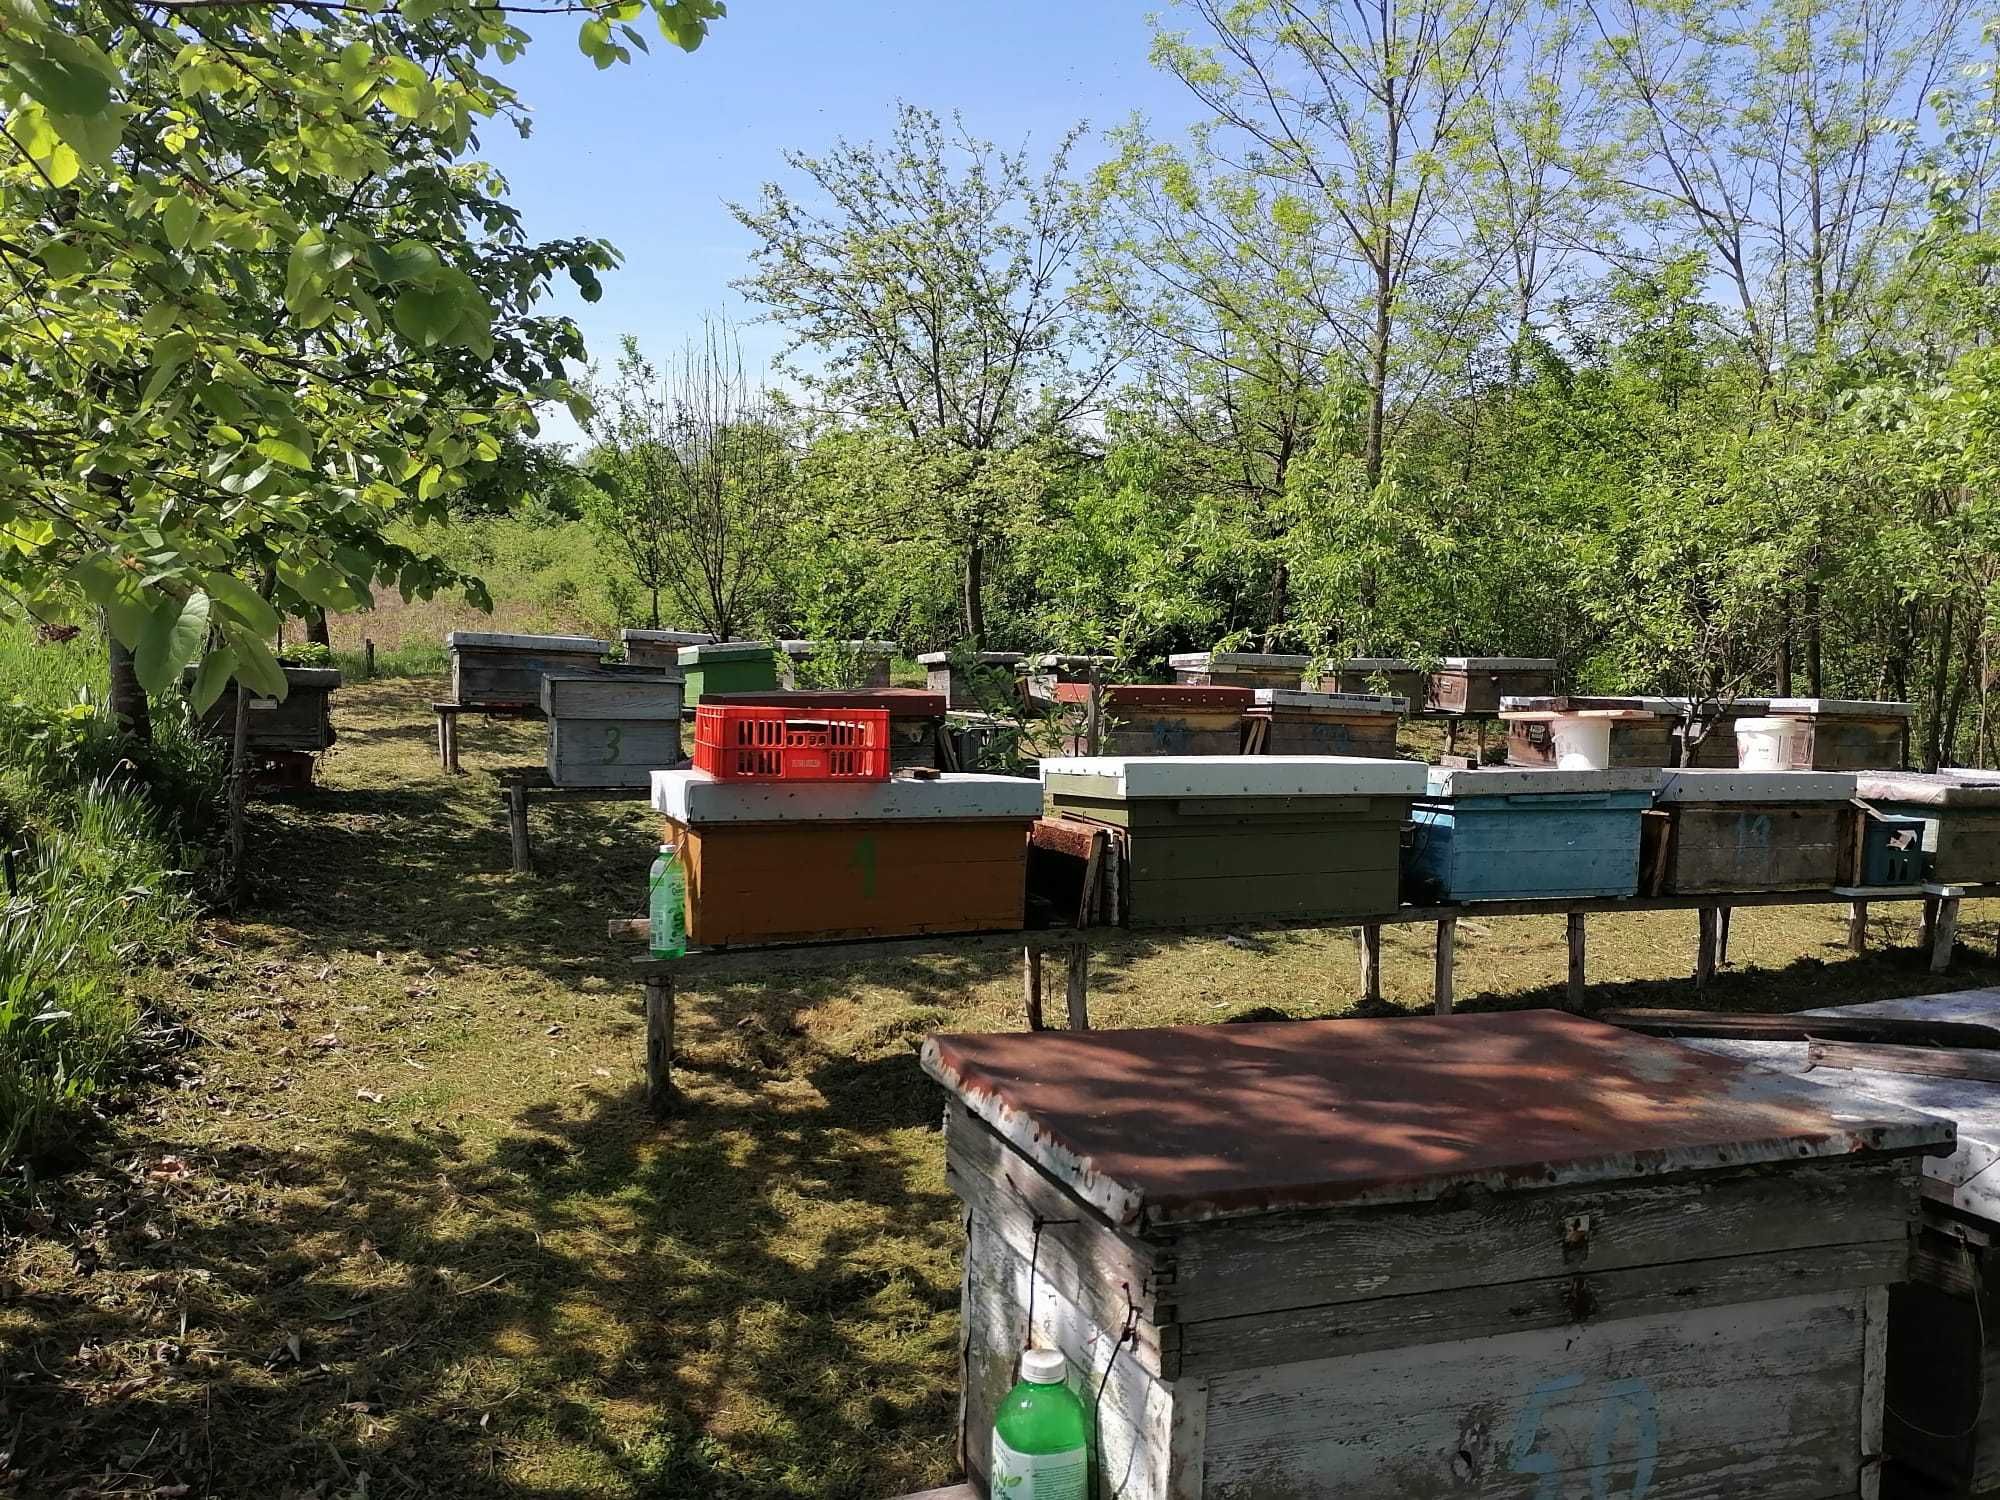 Vand albine 40 lei rama cu albine. Avem pe stoc 20 de familii